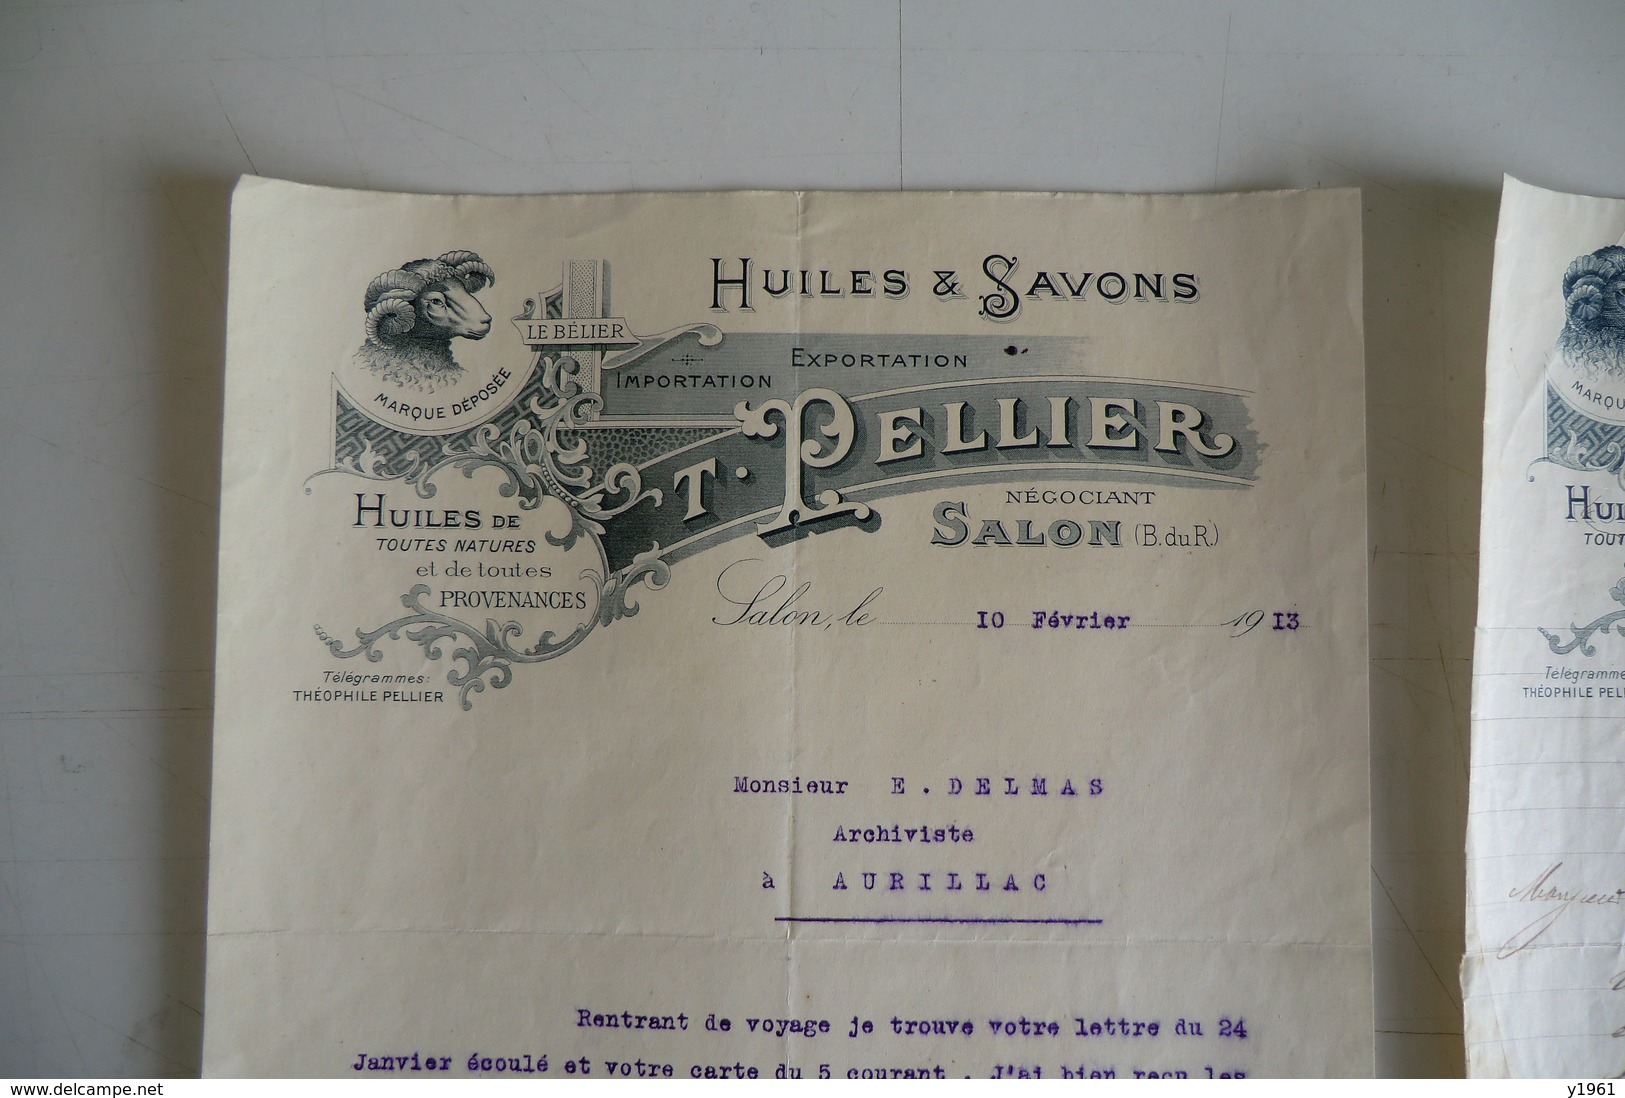 (014) FACTURES DOCUMENTS COMMERCIAUX. 13 BOUCHE DU RHONE SALON DE PROVENCE. T. PELLIER. Huiles, Savons.1933. - Alimentare